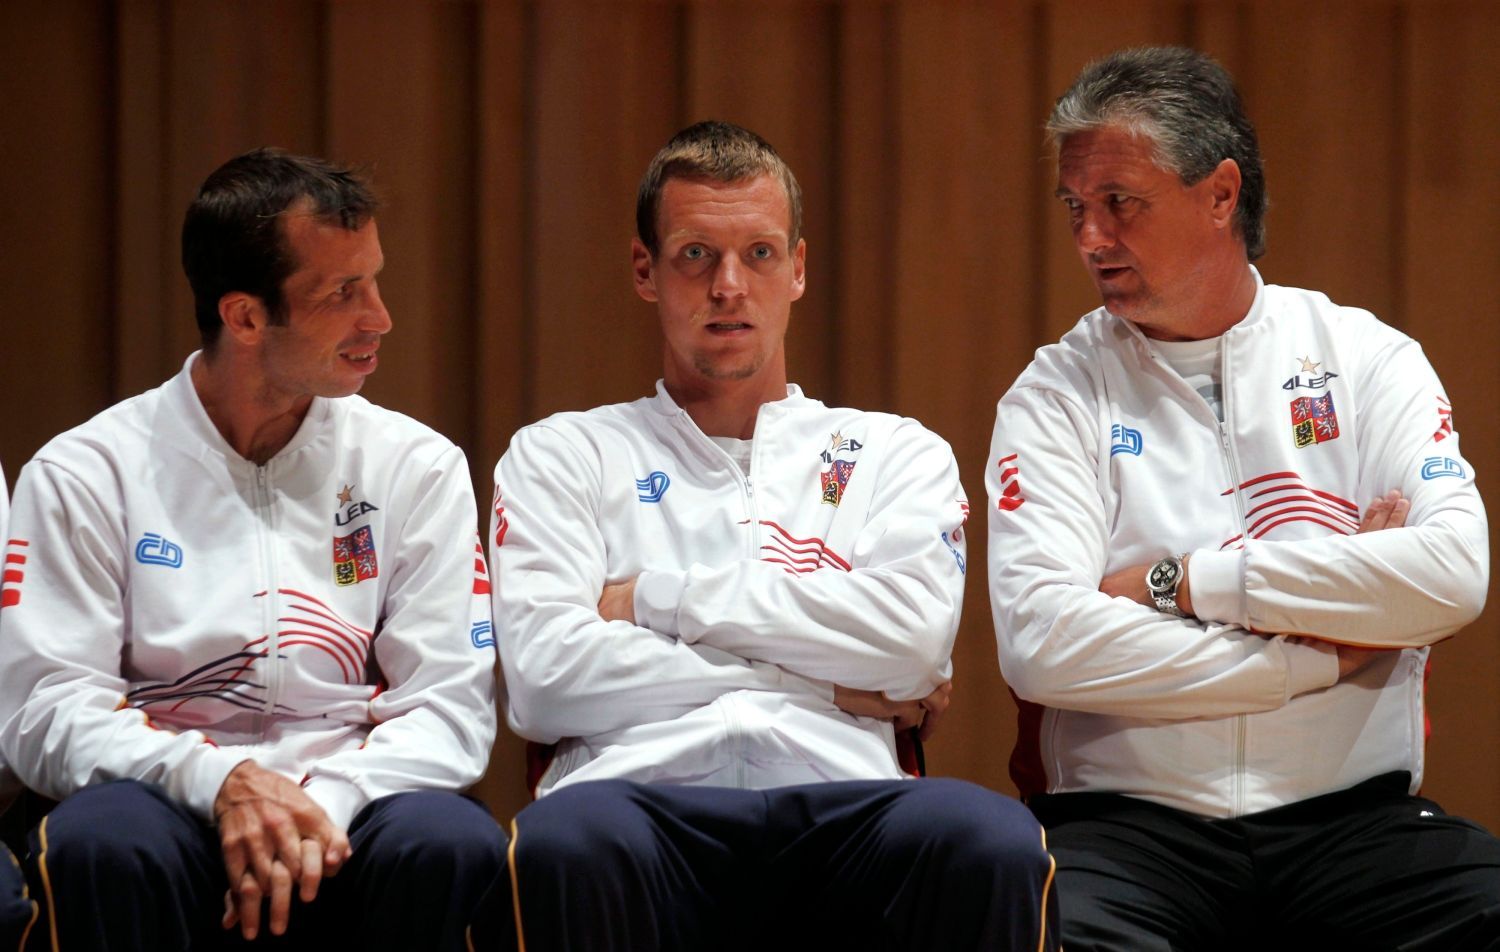 Tenisté Radek Štěpánek, Tomáš Berdych a kapitán Jaroslav Navrátil během oficiálního losování semifinálových utkání Davis Cupu 2012.